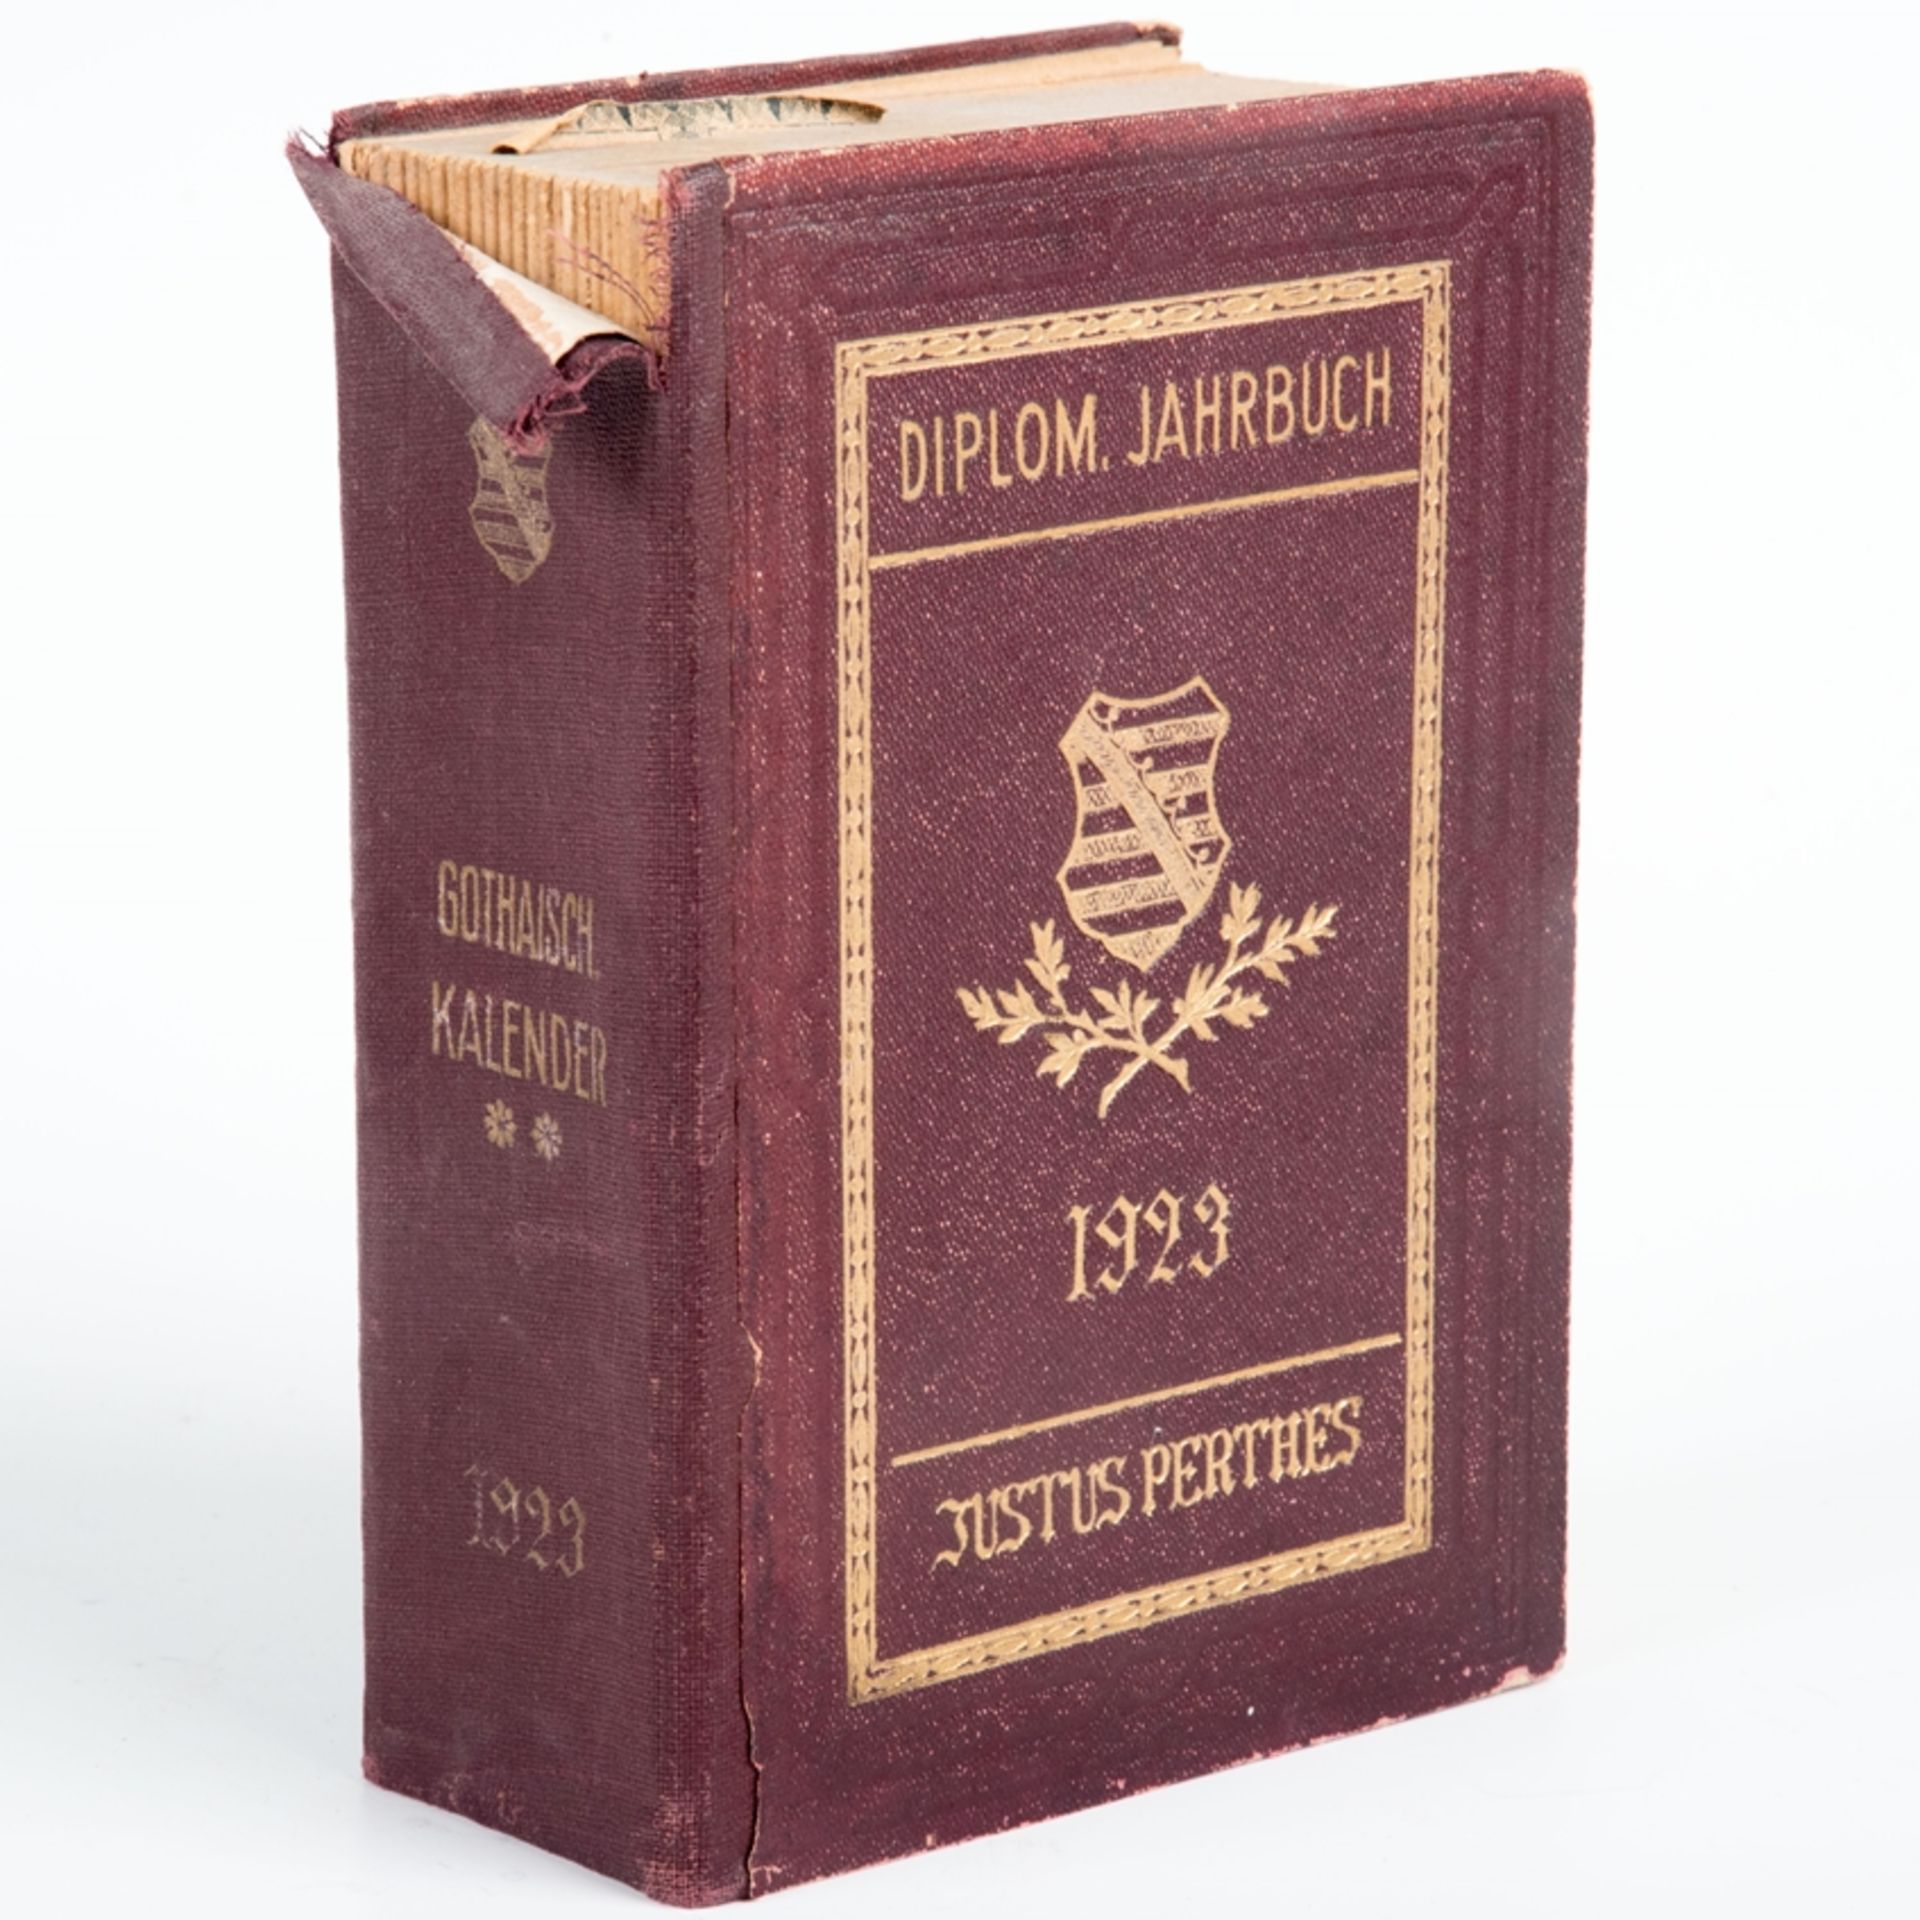 Gothaischer Kalender, Diplomatisches Jahrbuch 1923, Verlag Justus Perthes. Buchrücken mit Einriss.